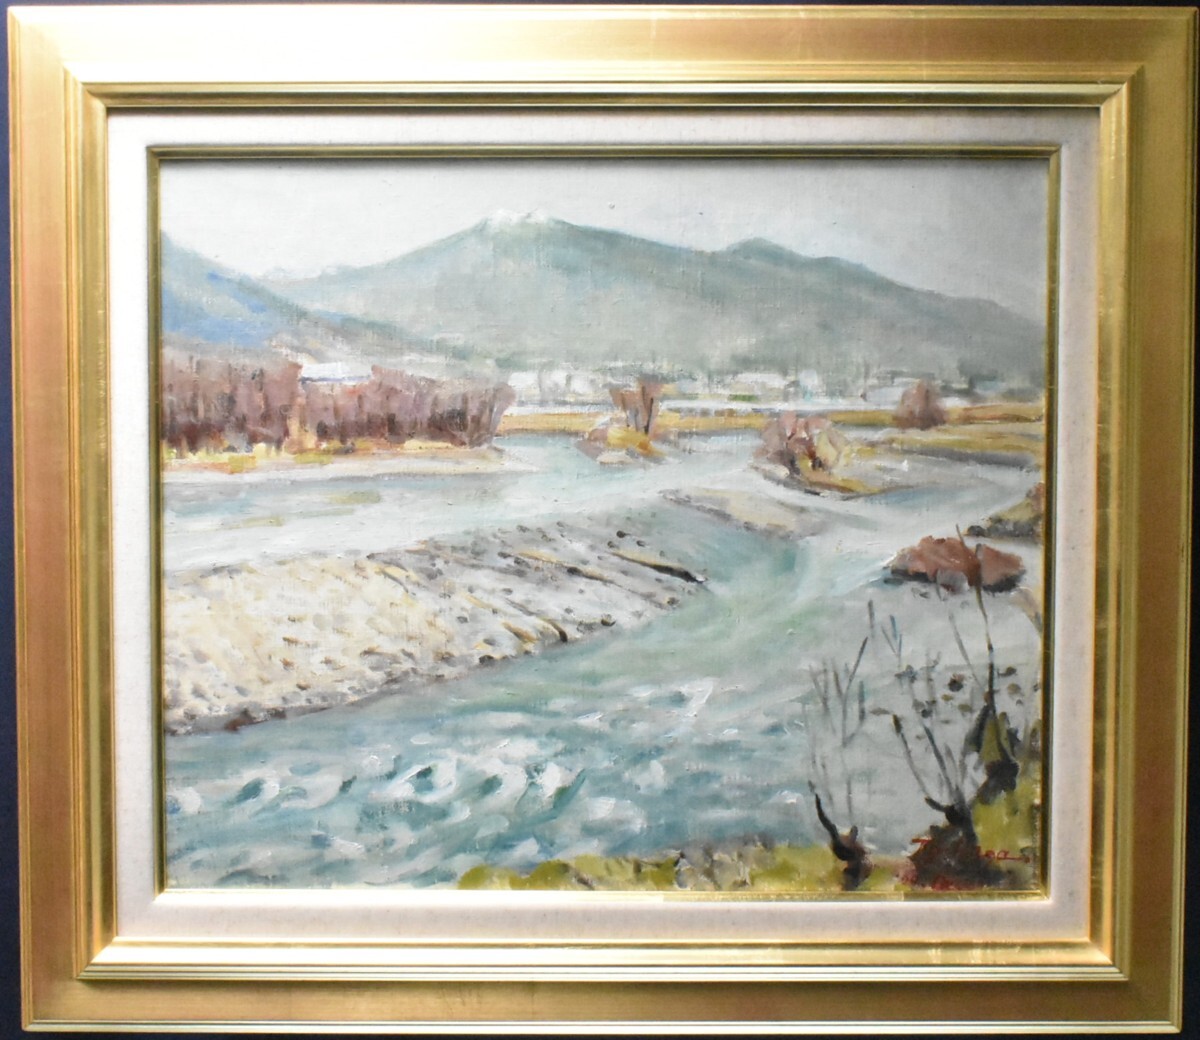 鸣泽司 8F 信州千曲川 西洋画 [Masami画廊], 绘画, 油画, 自然, 山水画